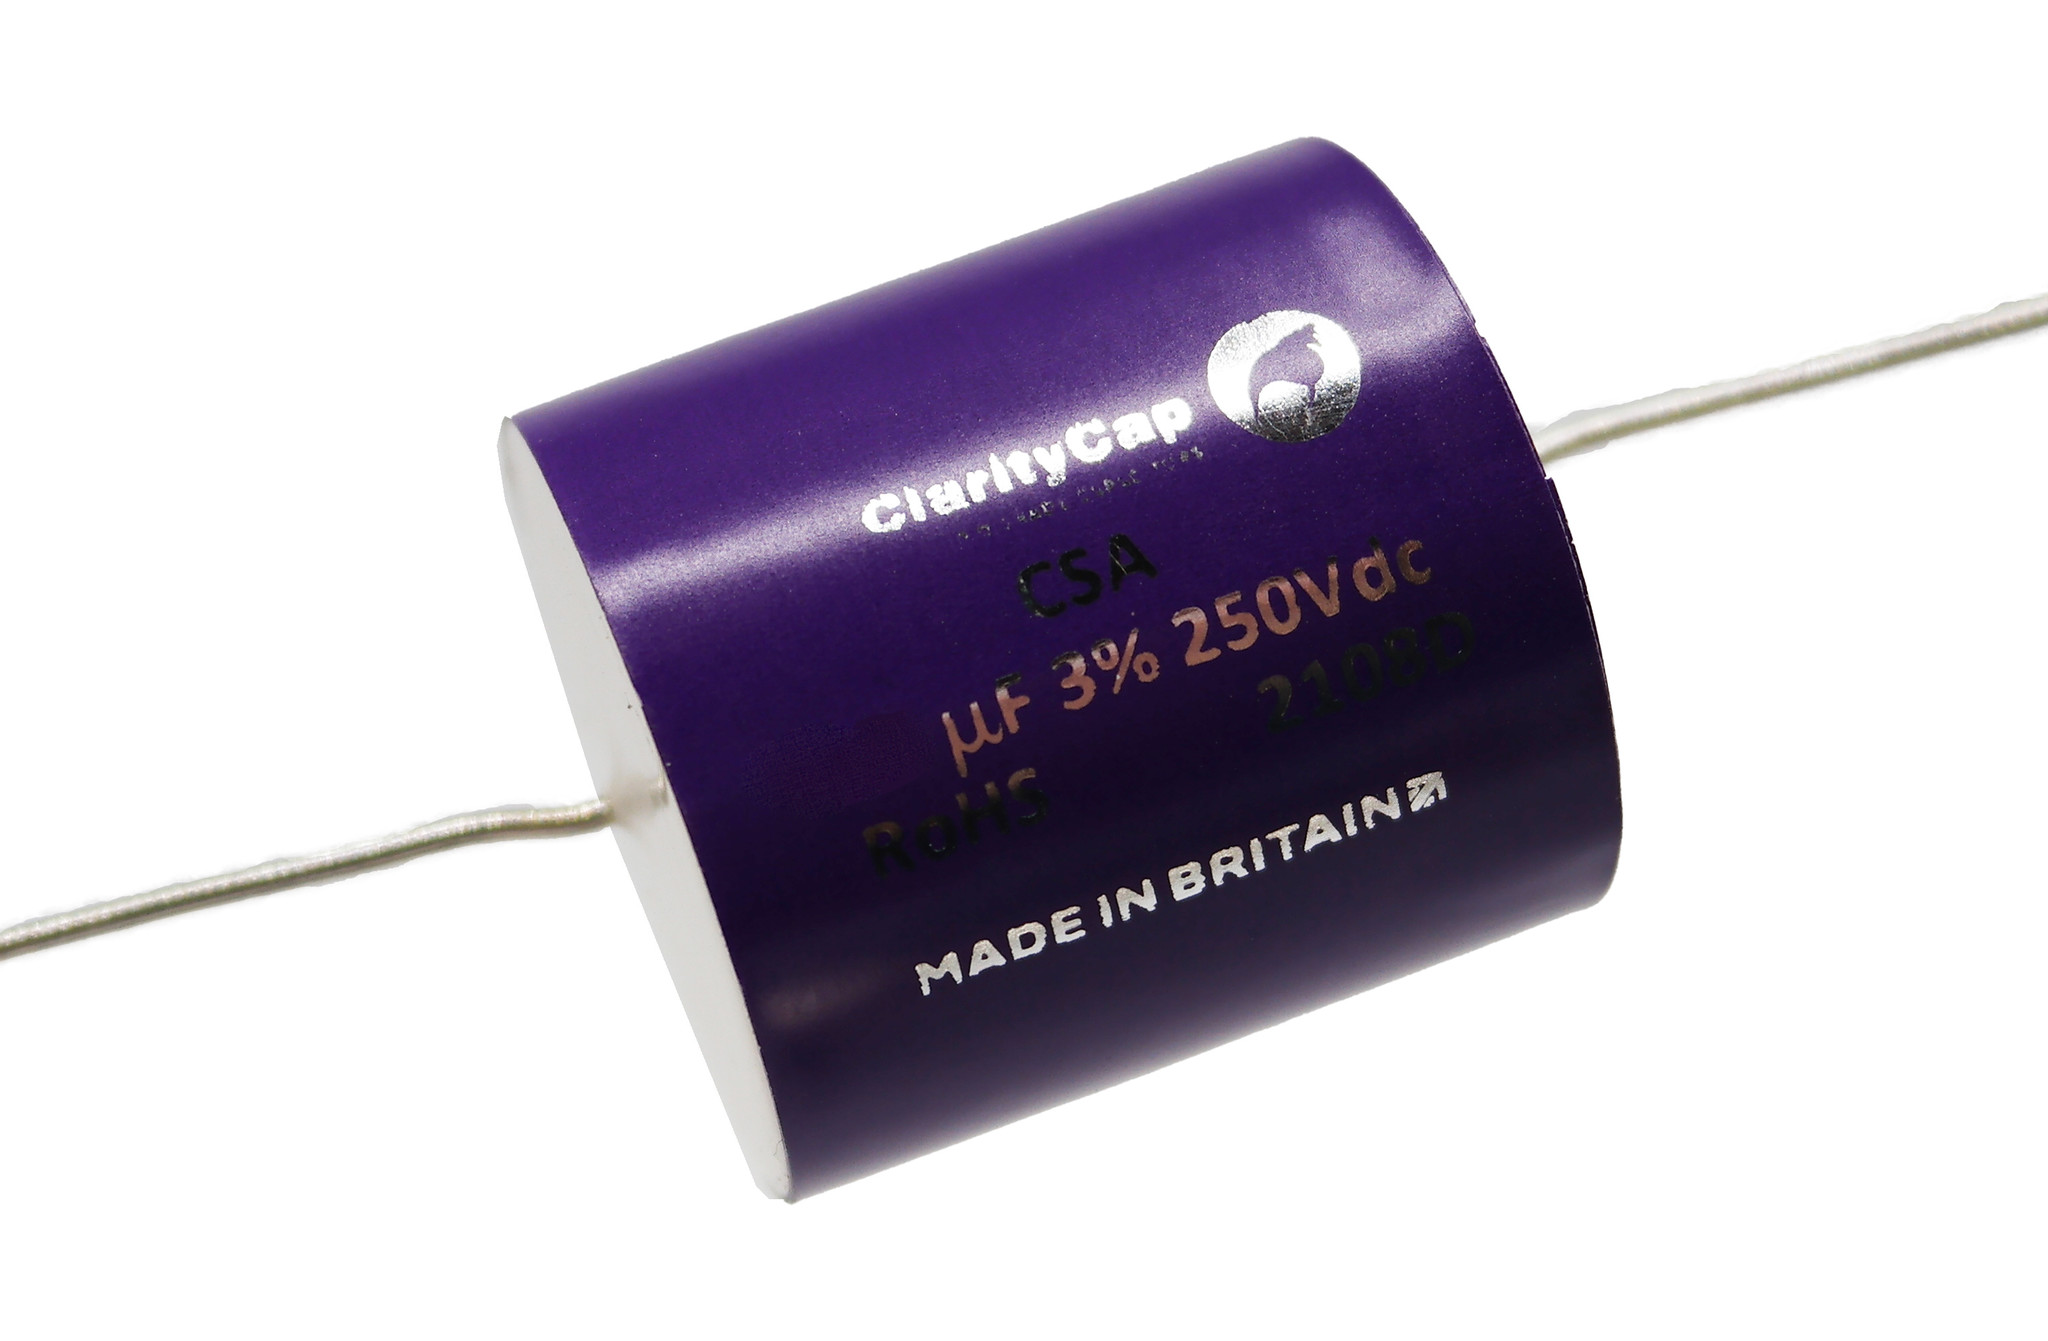 Condensatoare - Condensator film ClarityCap CSA9u1H250Vdc| 9.1 µF | 3% | 250 V, audioclub.ro